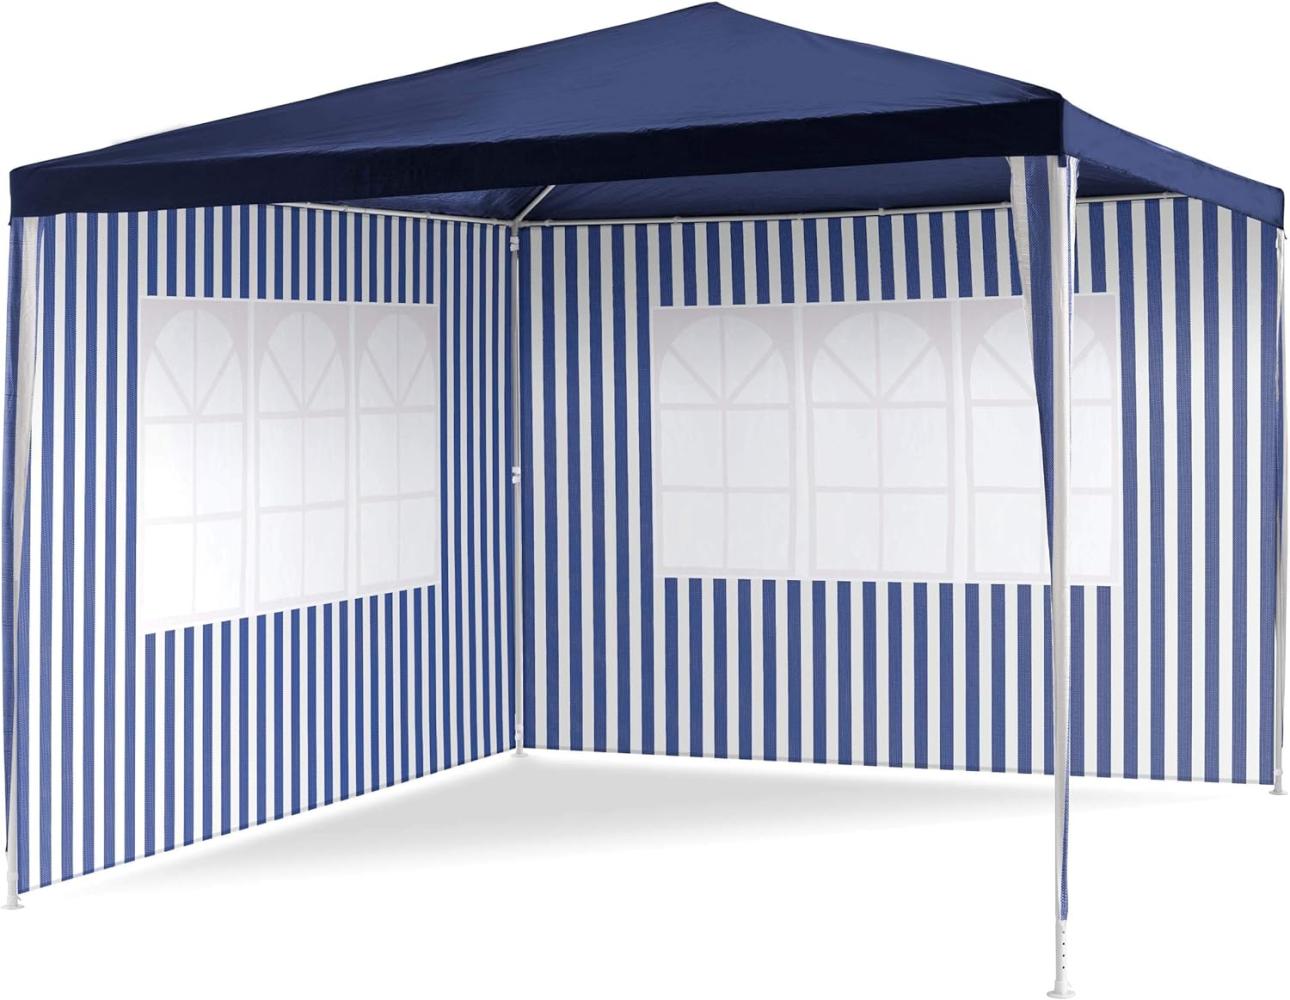 PE-Pavillon Partyzelt mit 2 Seitenteilen für Garten Terrasse Markt Camping Festival als Unterstand und Plane, wasserdicht 3 x 3 m blau Bild 1